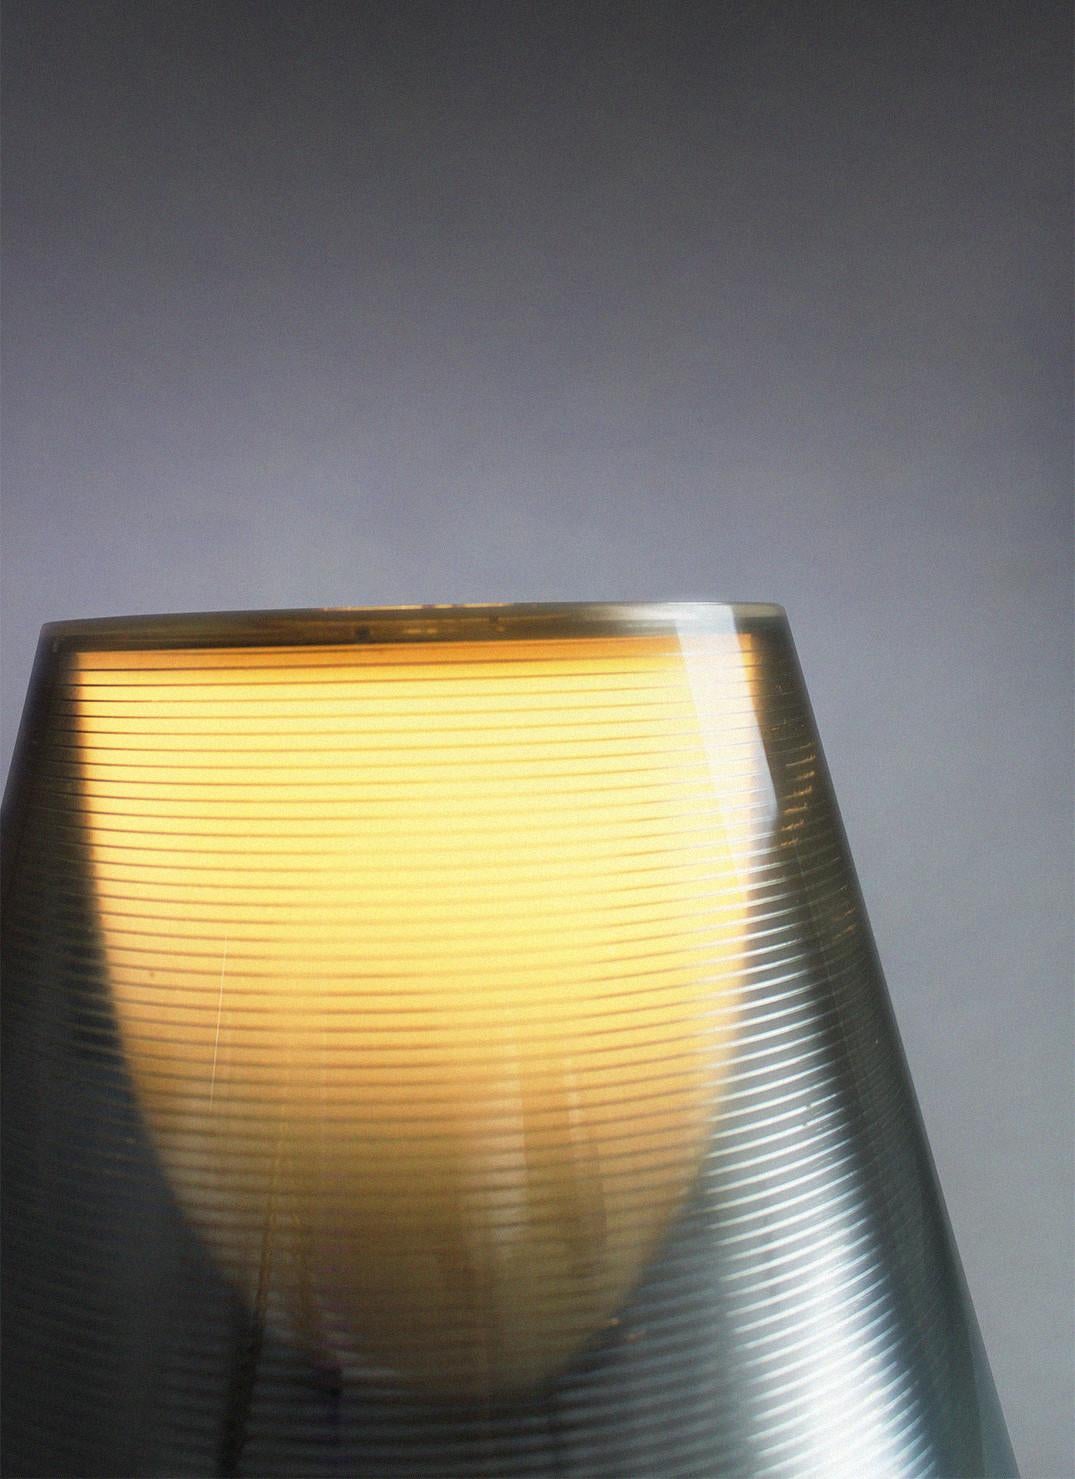 Die Miss K Tischleuchte ist ein Entwurf von Philippe Starck, den er für den italienischen Leuchtenhersteller Flos entworfen hat. Dank der zwei verschiedenen Lichtdiffusoren schafft sie sofort eine schöne Atmosphäre in Ihrem Interieur. Sie können die